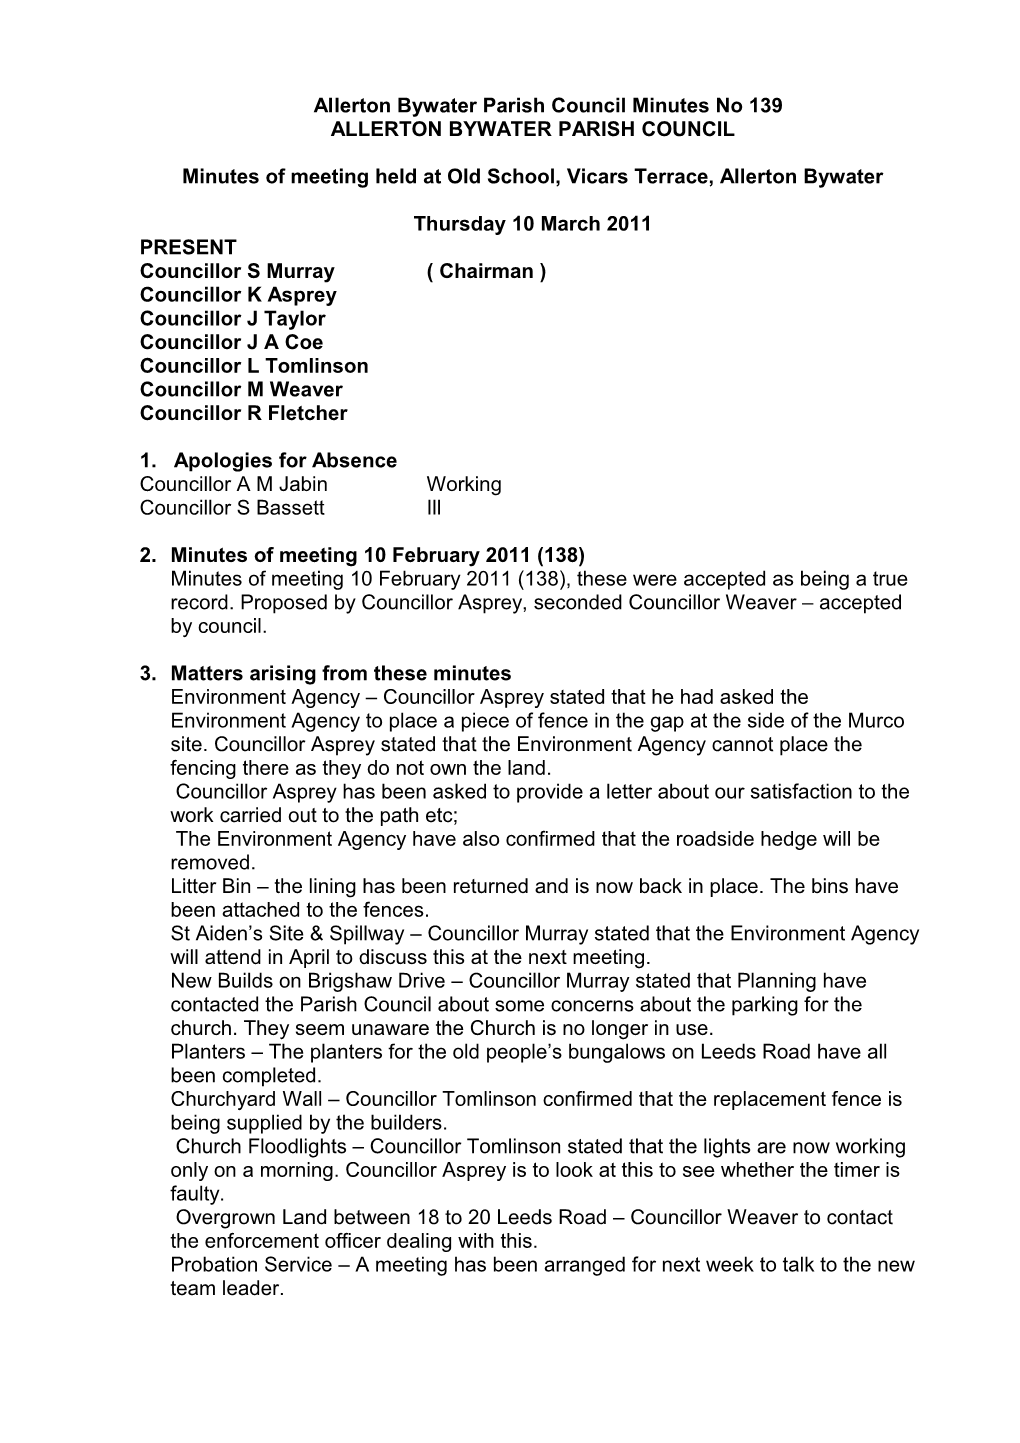 Allerton Bywater Parish Council Minutes No 54